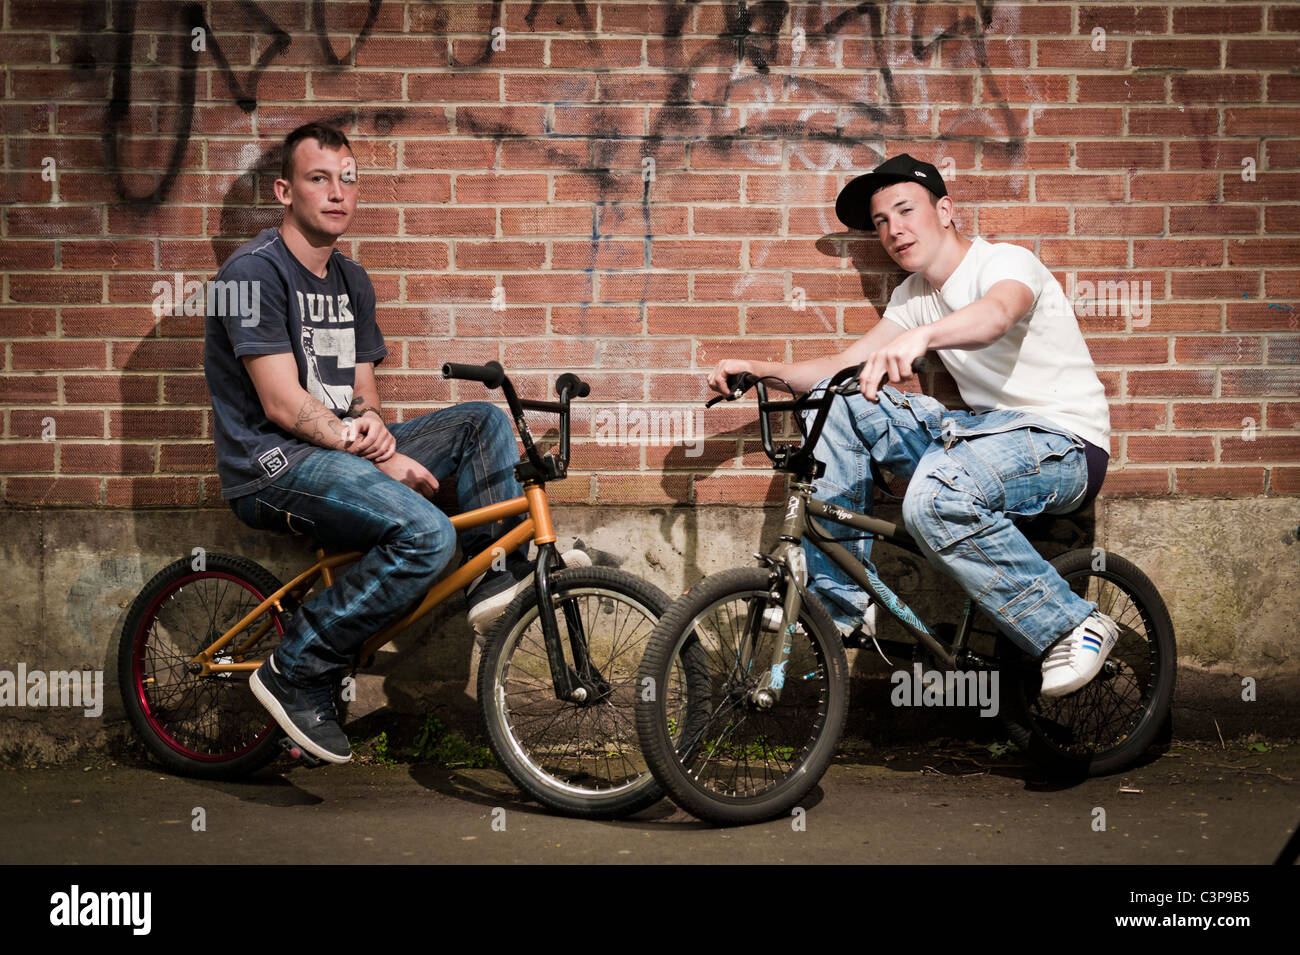 Zwei jungen im Teenageralter mit Einstellung auf BMX Stunt Bikes gelehnt eine Mauer, UK Stockfoto